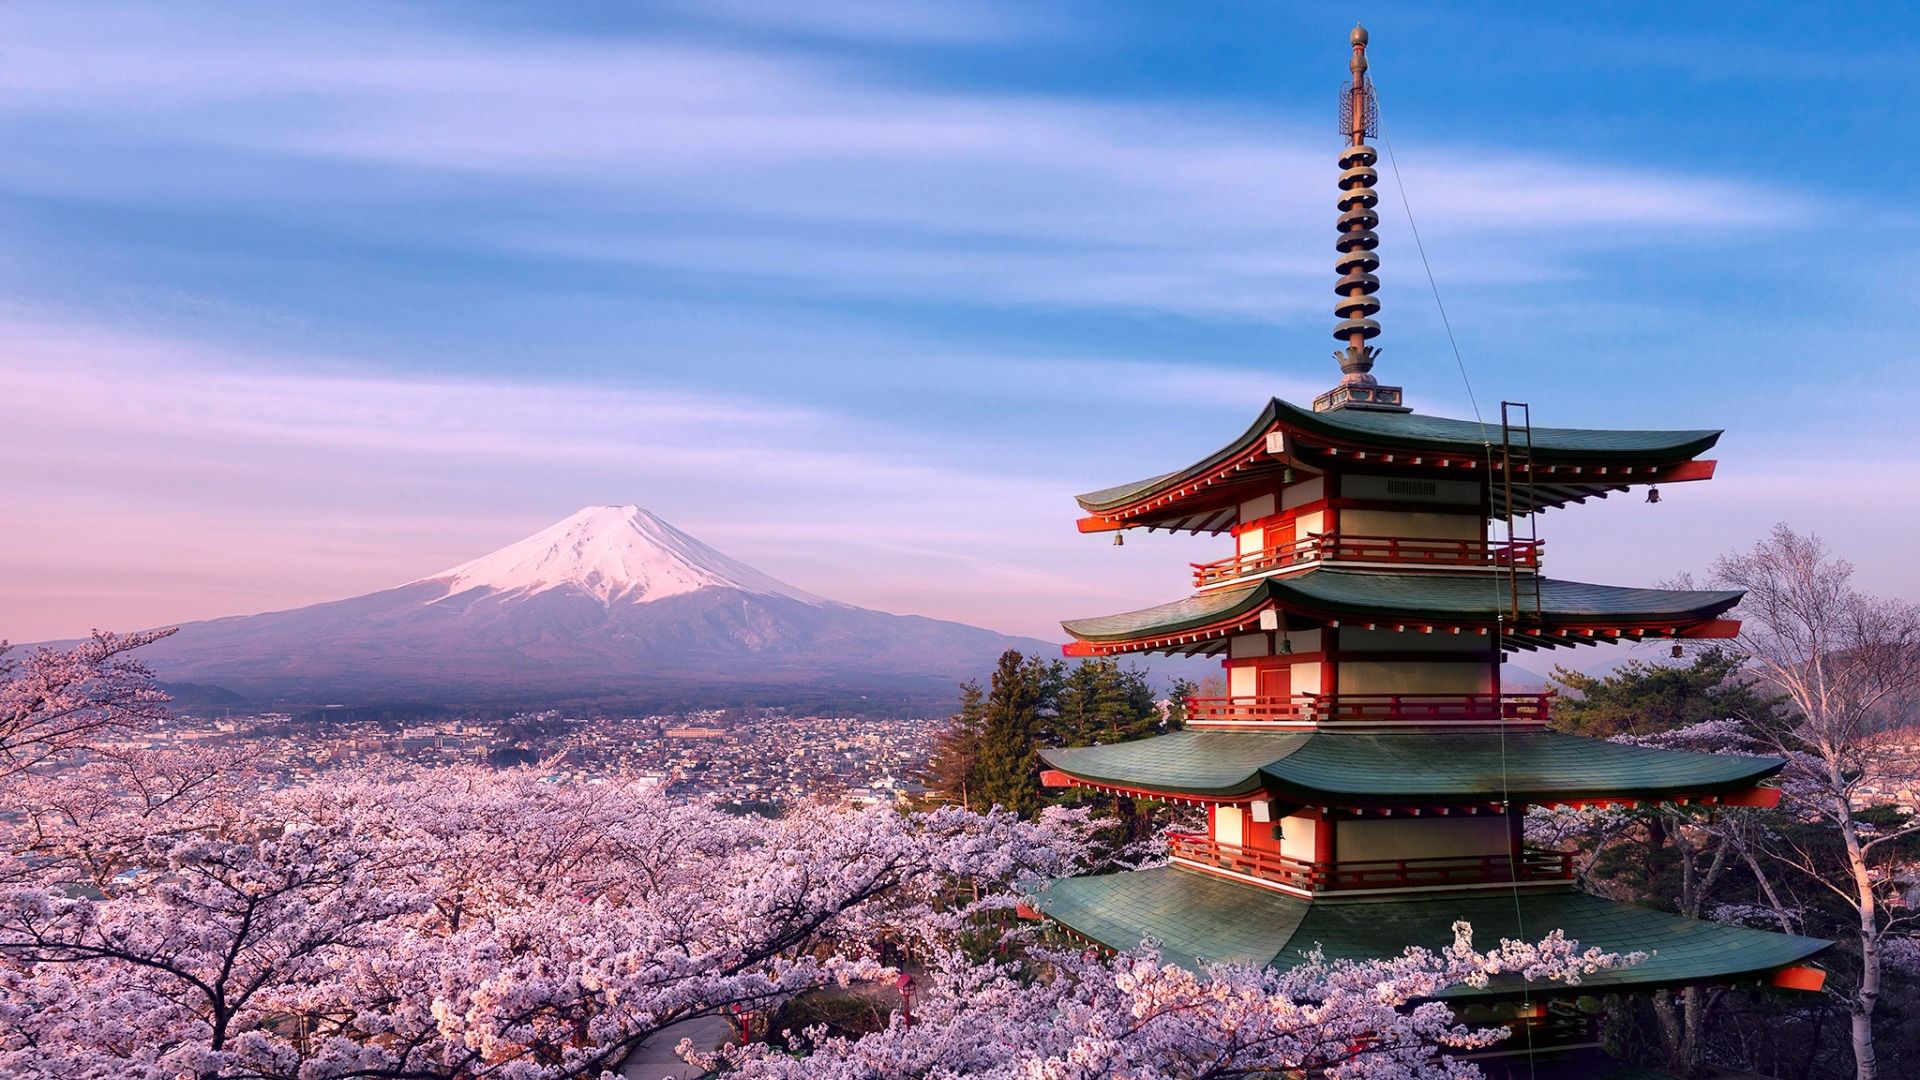 满树烂漫的日本樱花美景壁纸,散步在街道显得脚步轻松